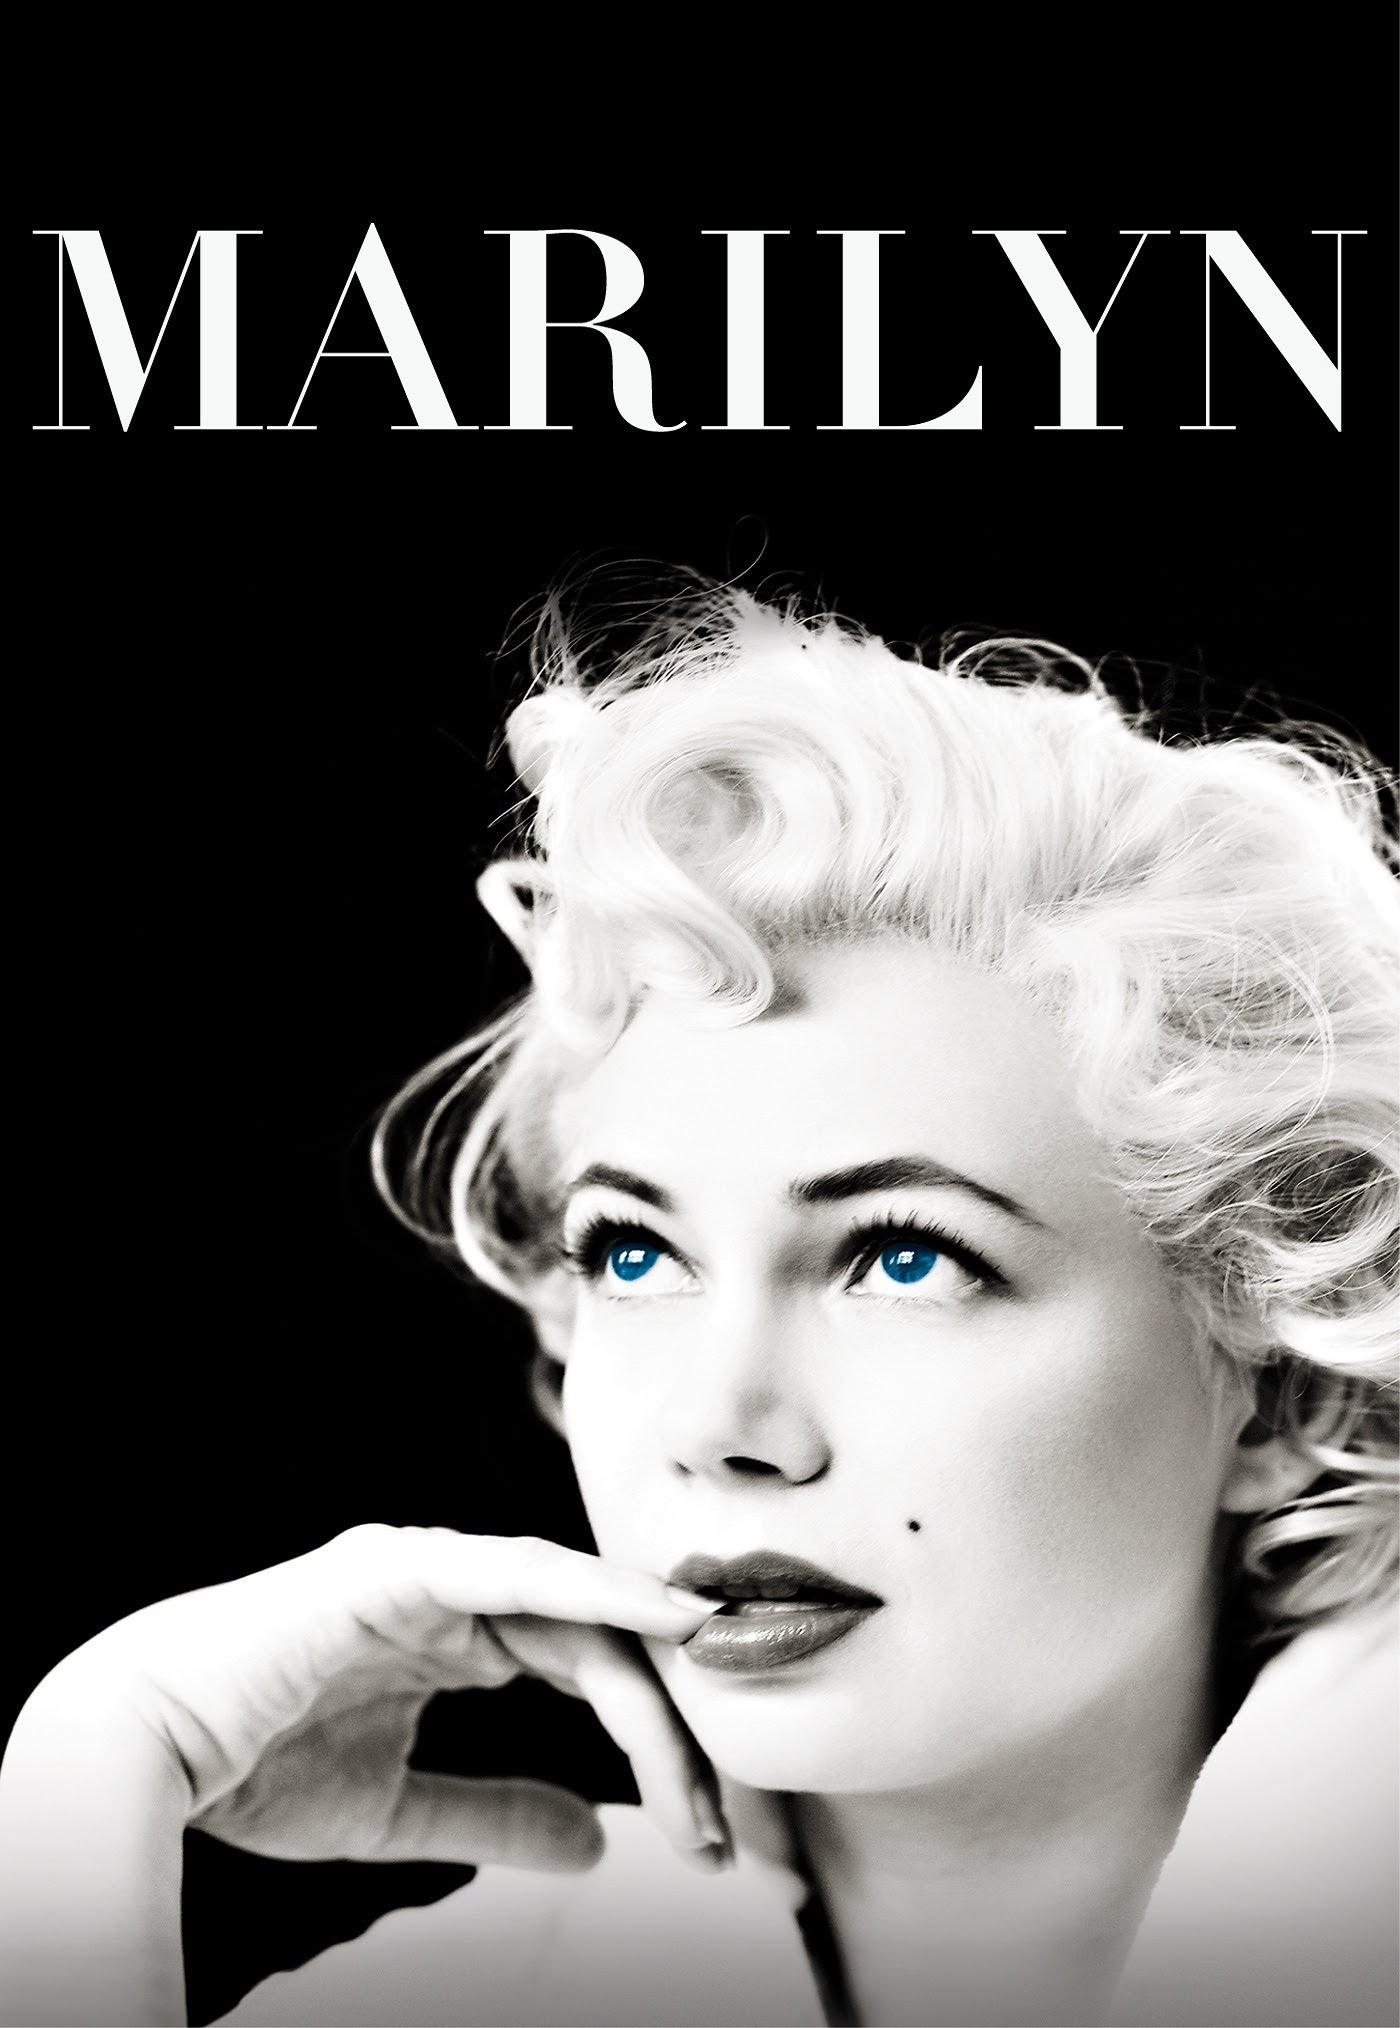 Marilyn [HD] (2012)